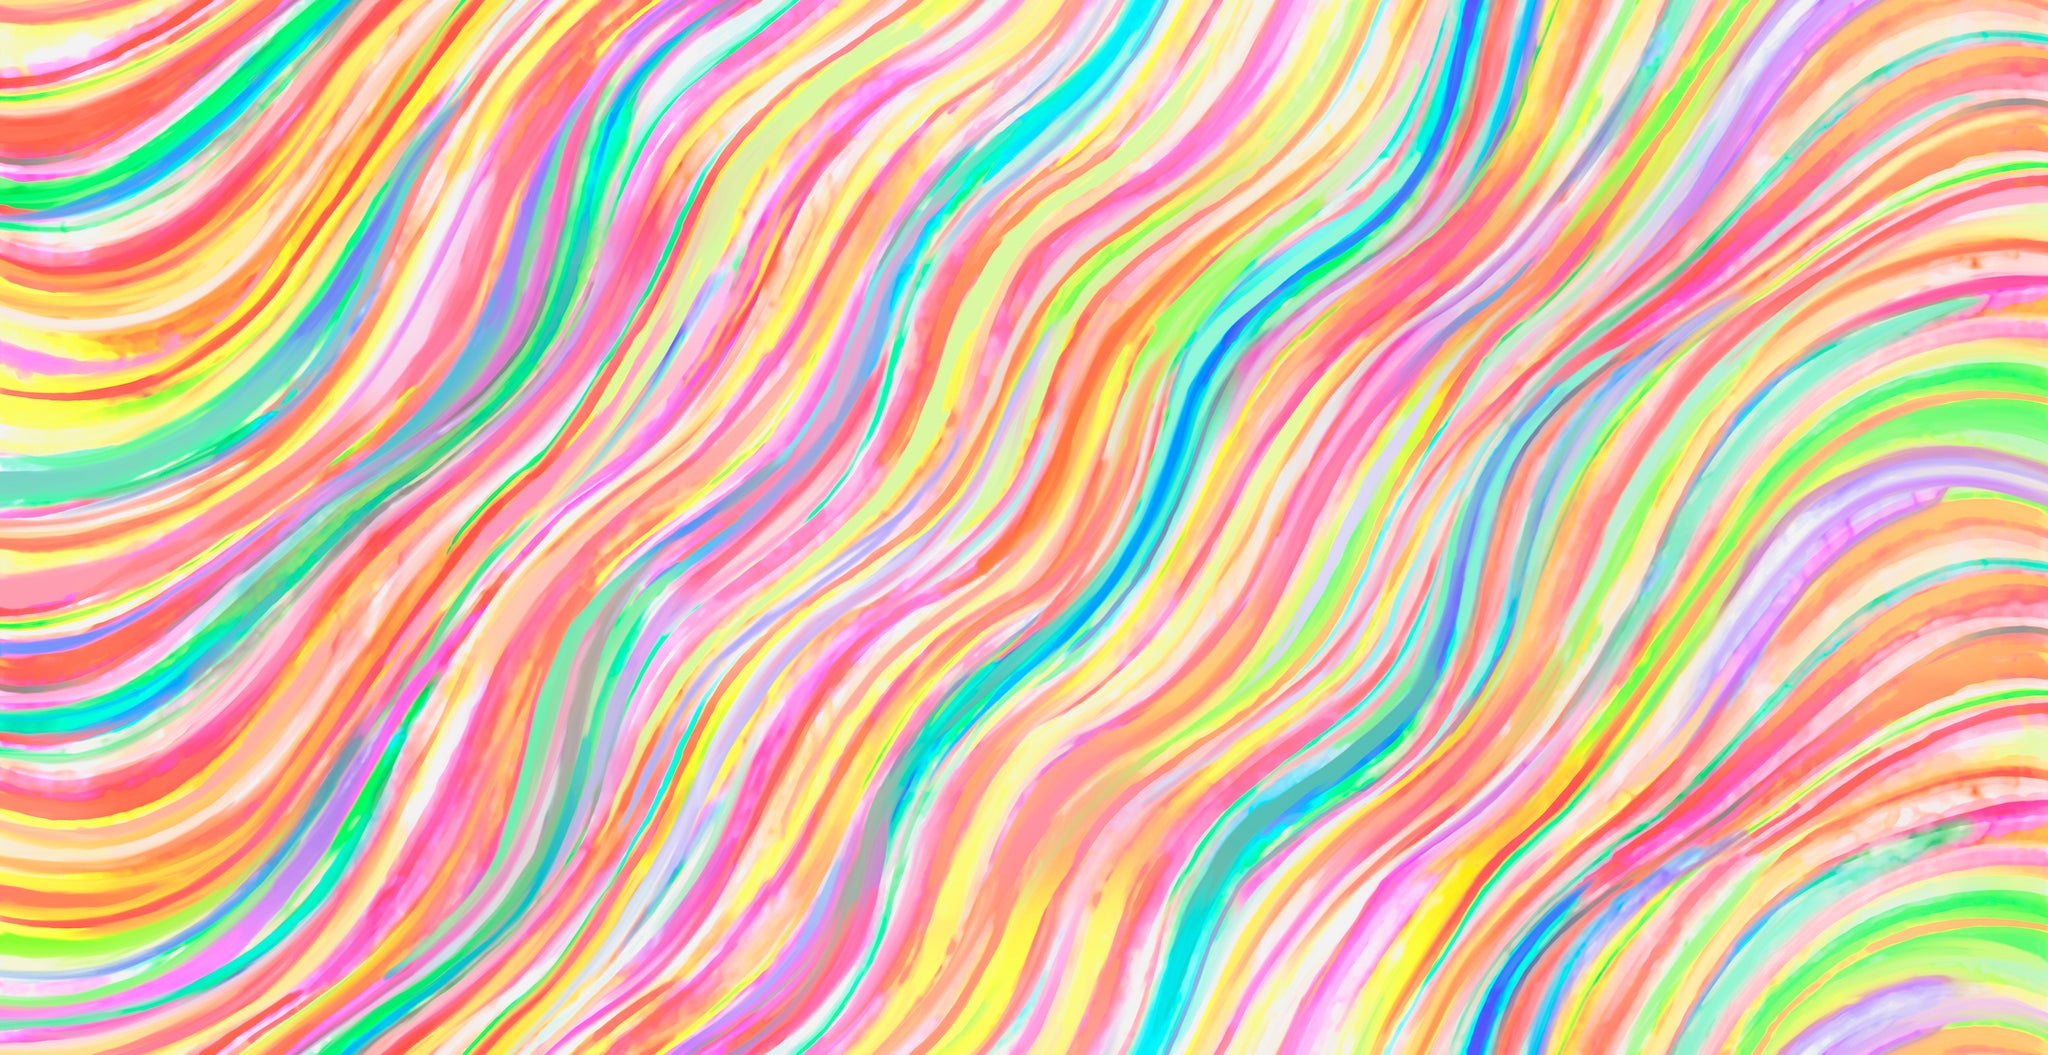 GRADIENTS AURAS Watercolor Wave prism